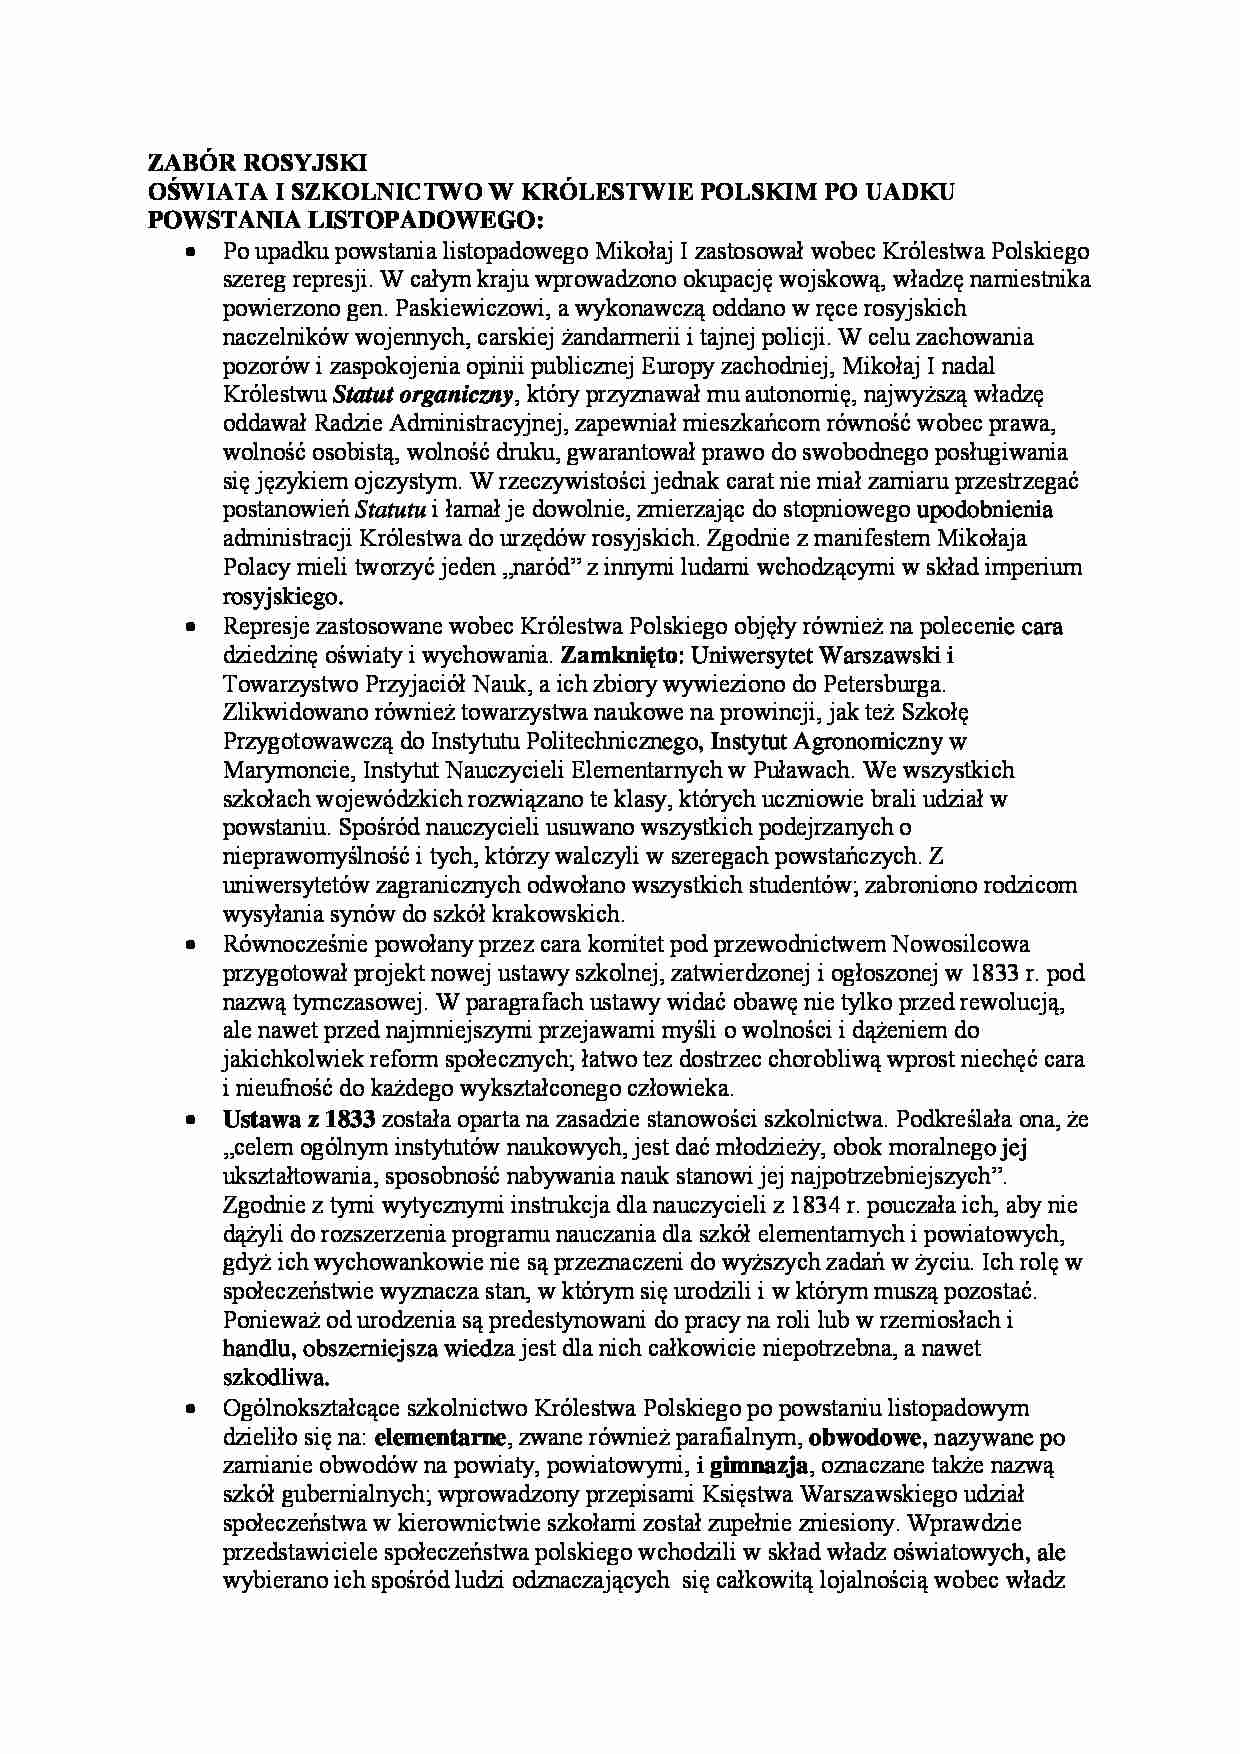 Zabór rosyjski - oświata i szkolnictwo - strona 1